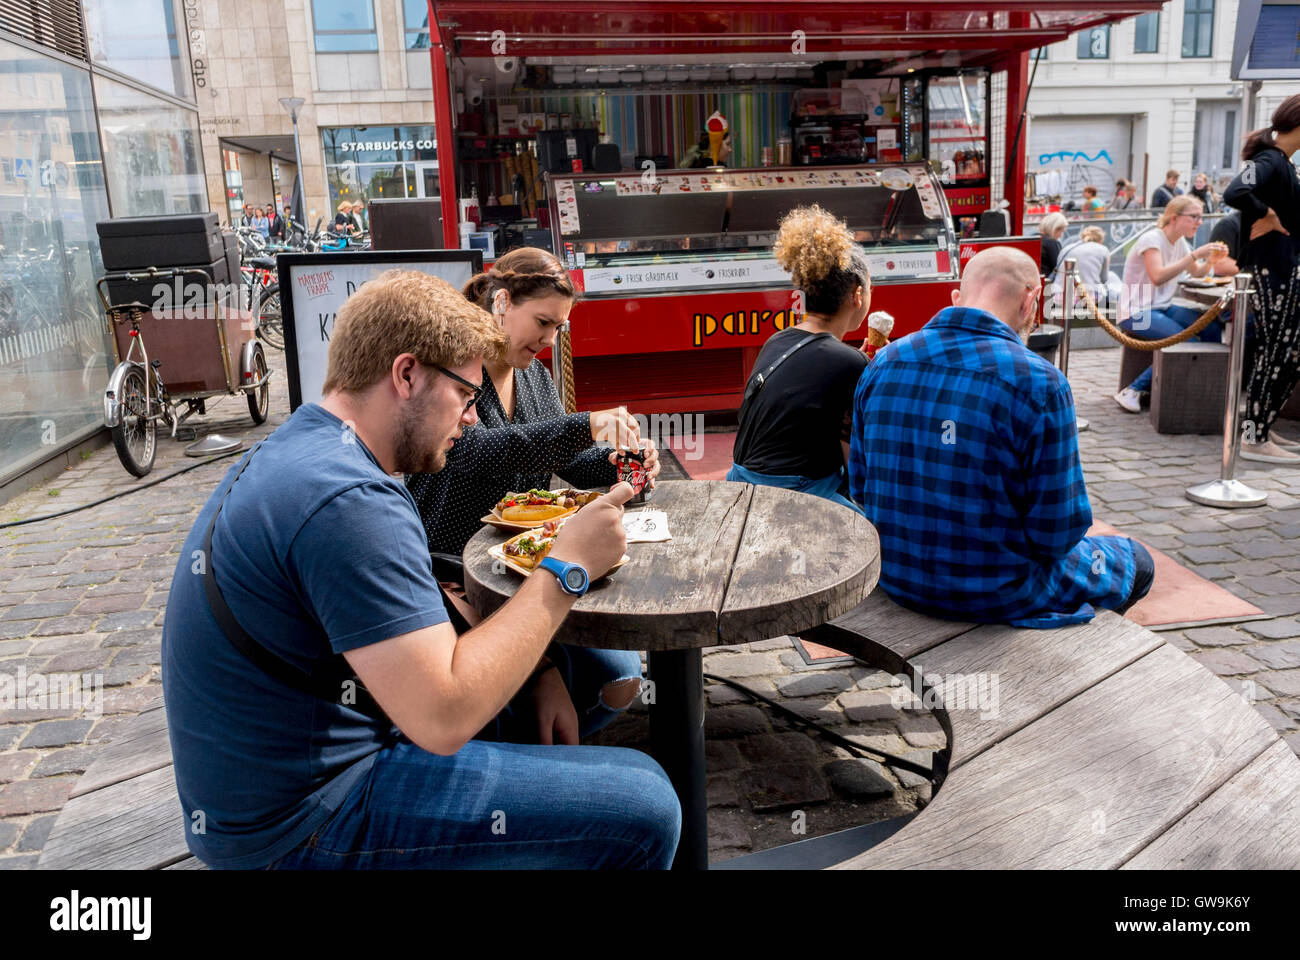 Copenhague, Danemark, café des scènes, les gens le partage des repas, de l'alimentation de rue, vendeurs, dans Torvfhallerne marché alimentaire, les quartiers locaux Banque D'Images